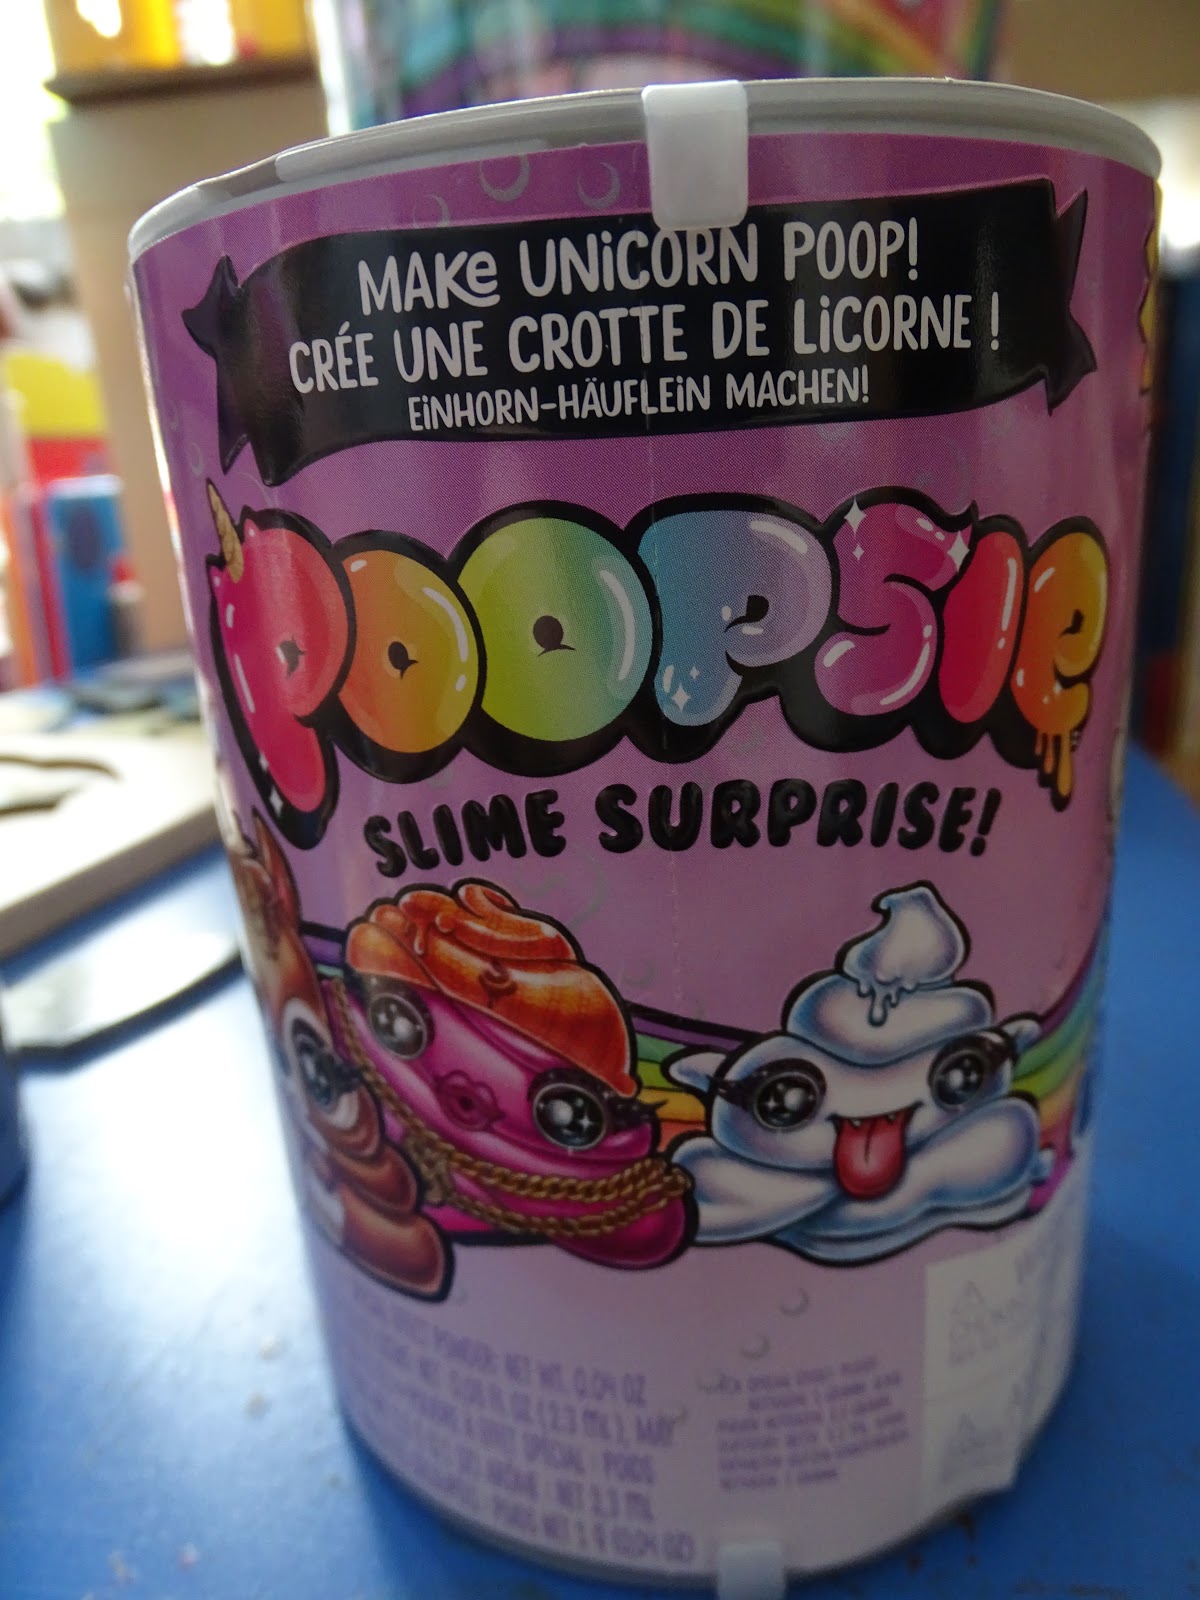 Poopsie Slime Surprise Poop Pack  The Poopsie Slime Surprise is